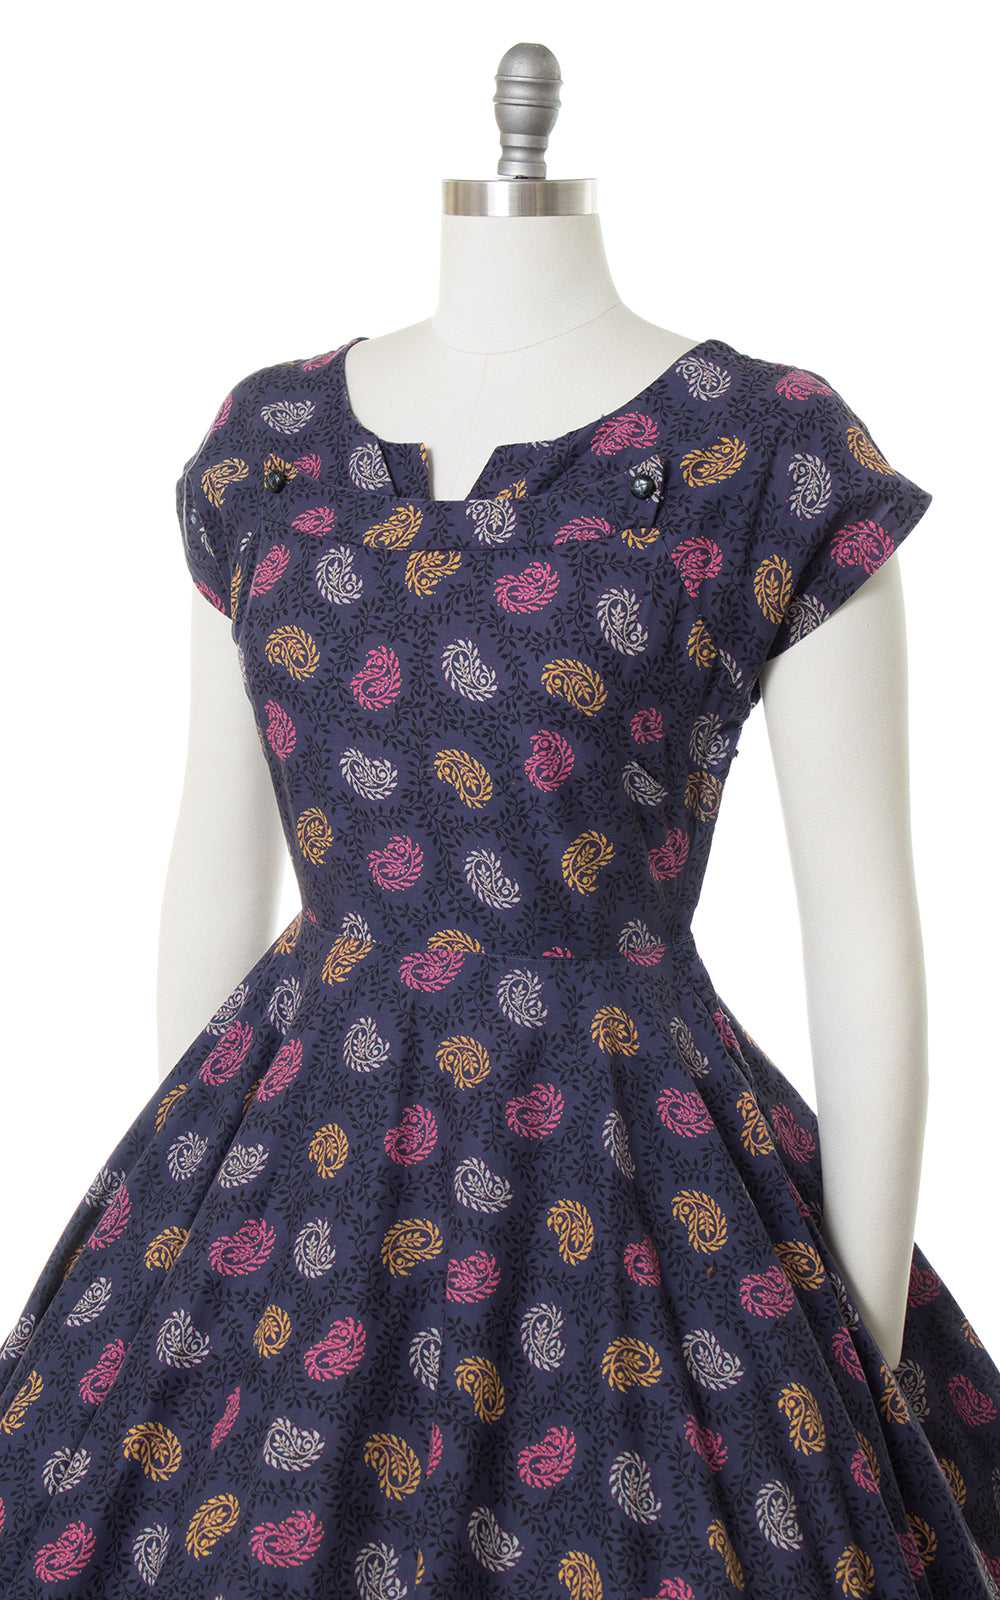 $65 DRESS SALE /// 1950s Paisley Cotton Circle Sk… - image 5